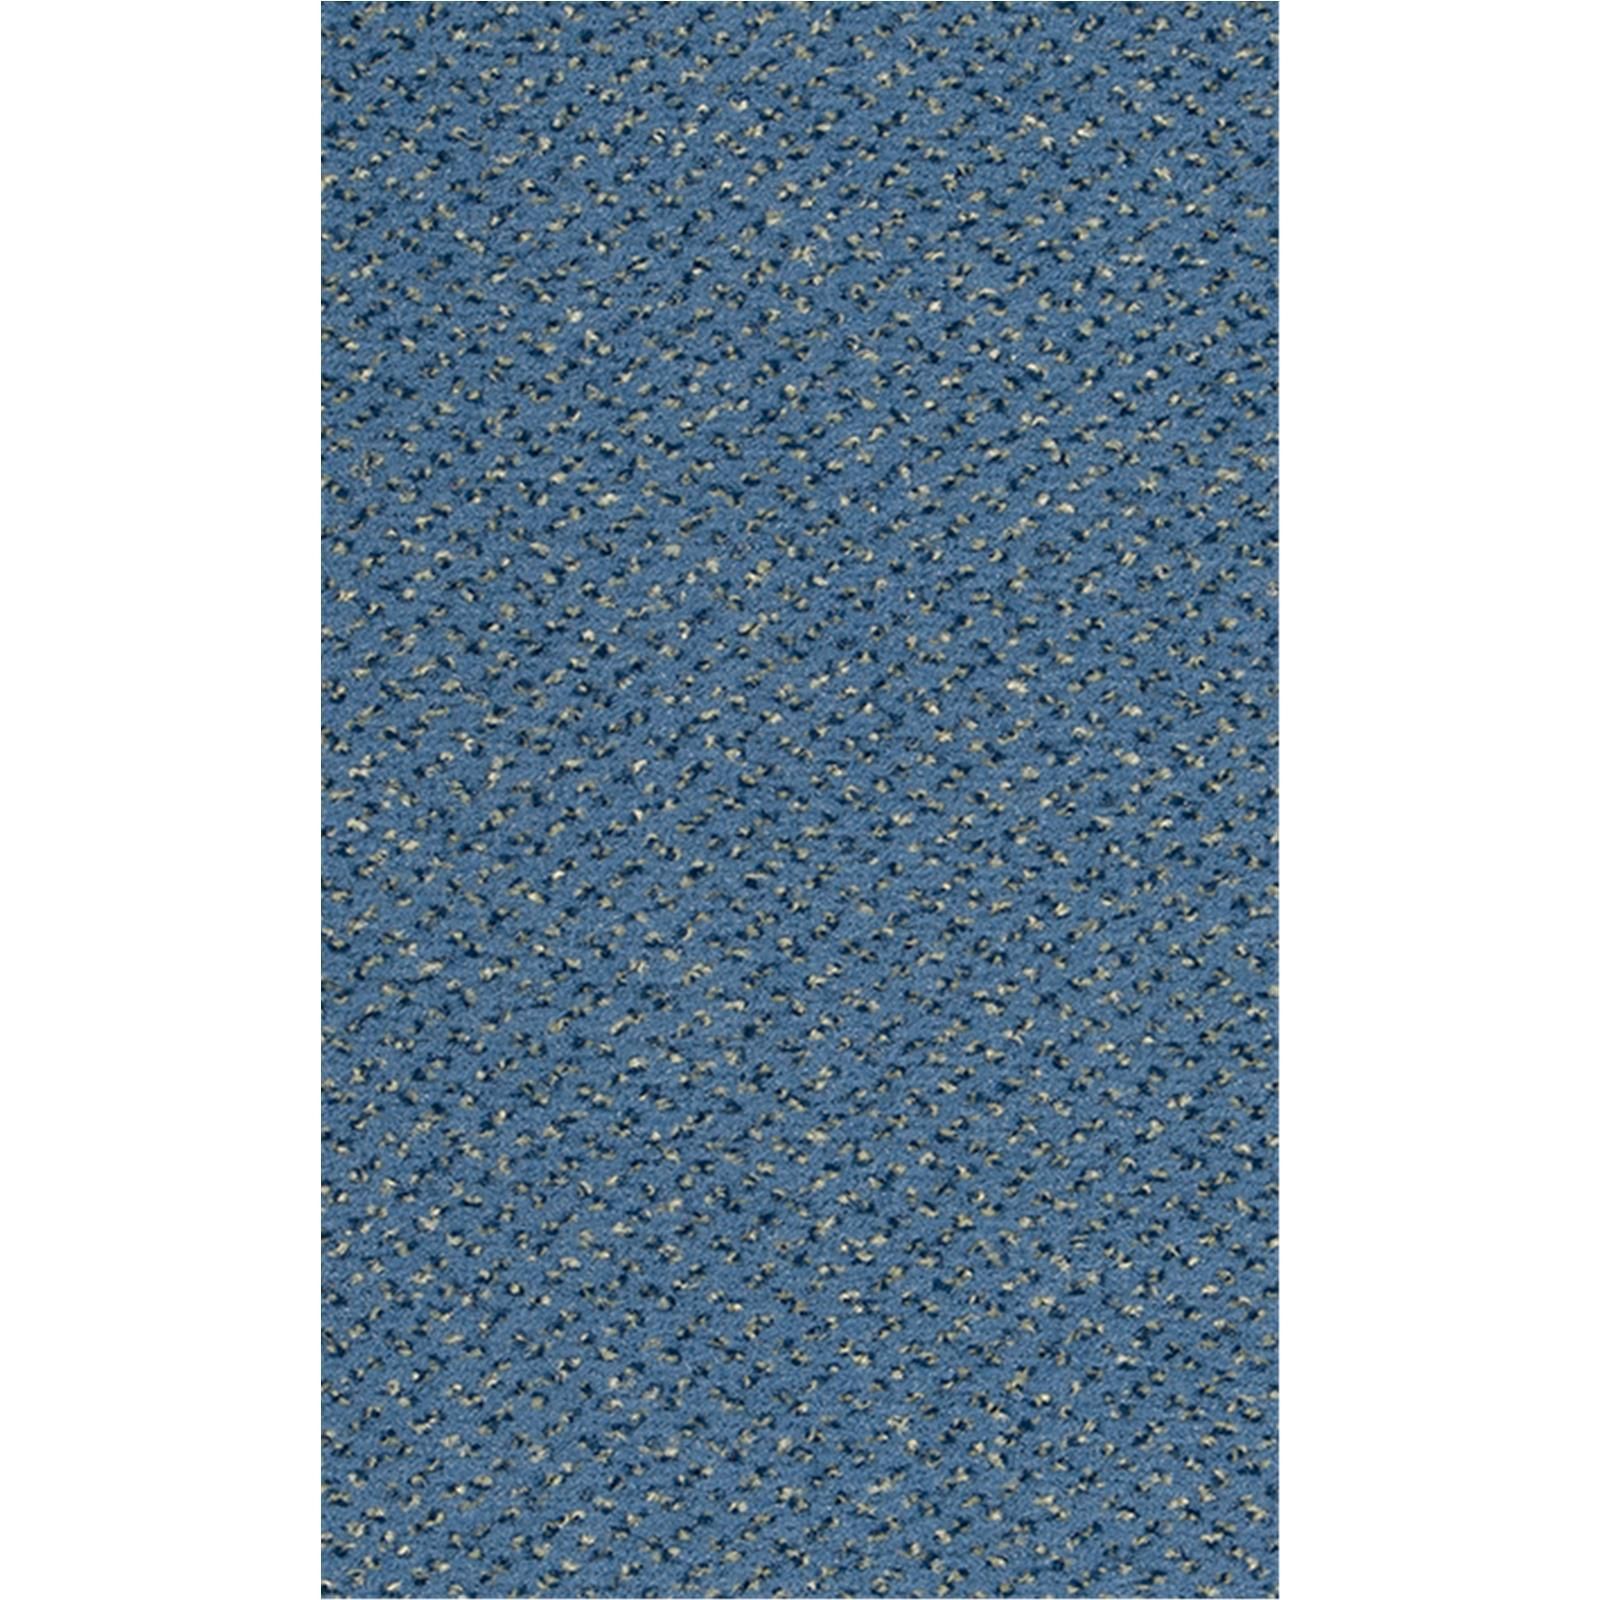 Teppichboden Vorwerk Passion 1006 ALEXIS Velours Blau 3R28 - Rollenbreite 400 cm